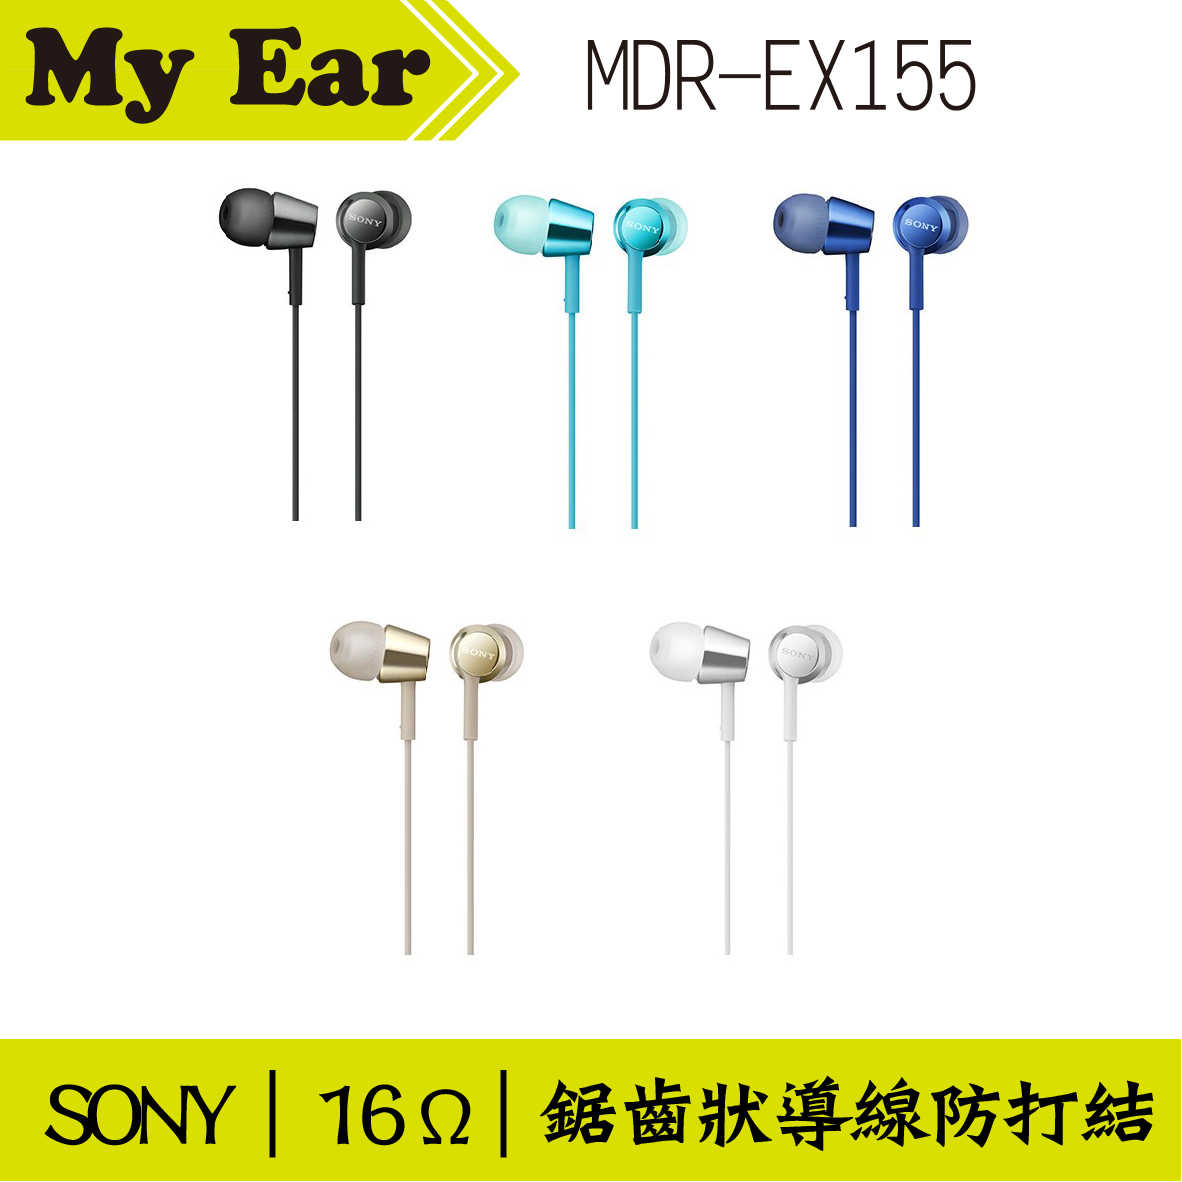 SONY MDR-EX155 入耳式立體聲耳機 藍色  | My Ear 耳機專門店